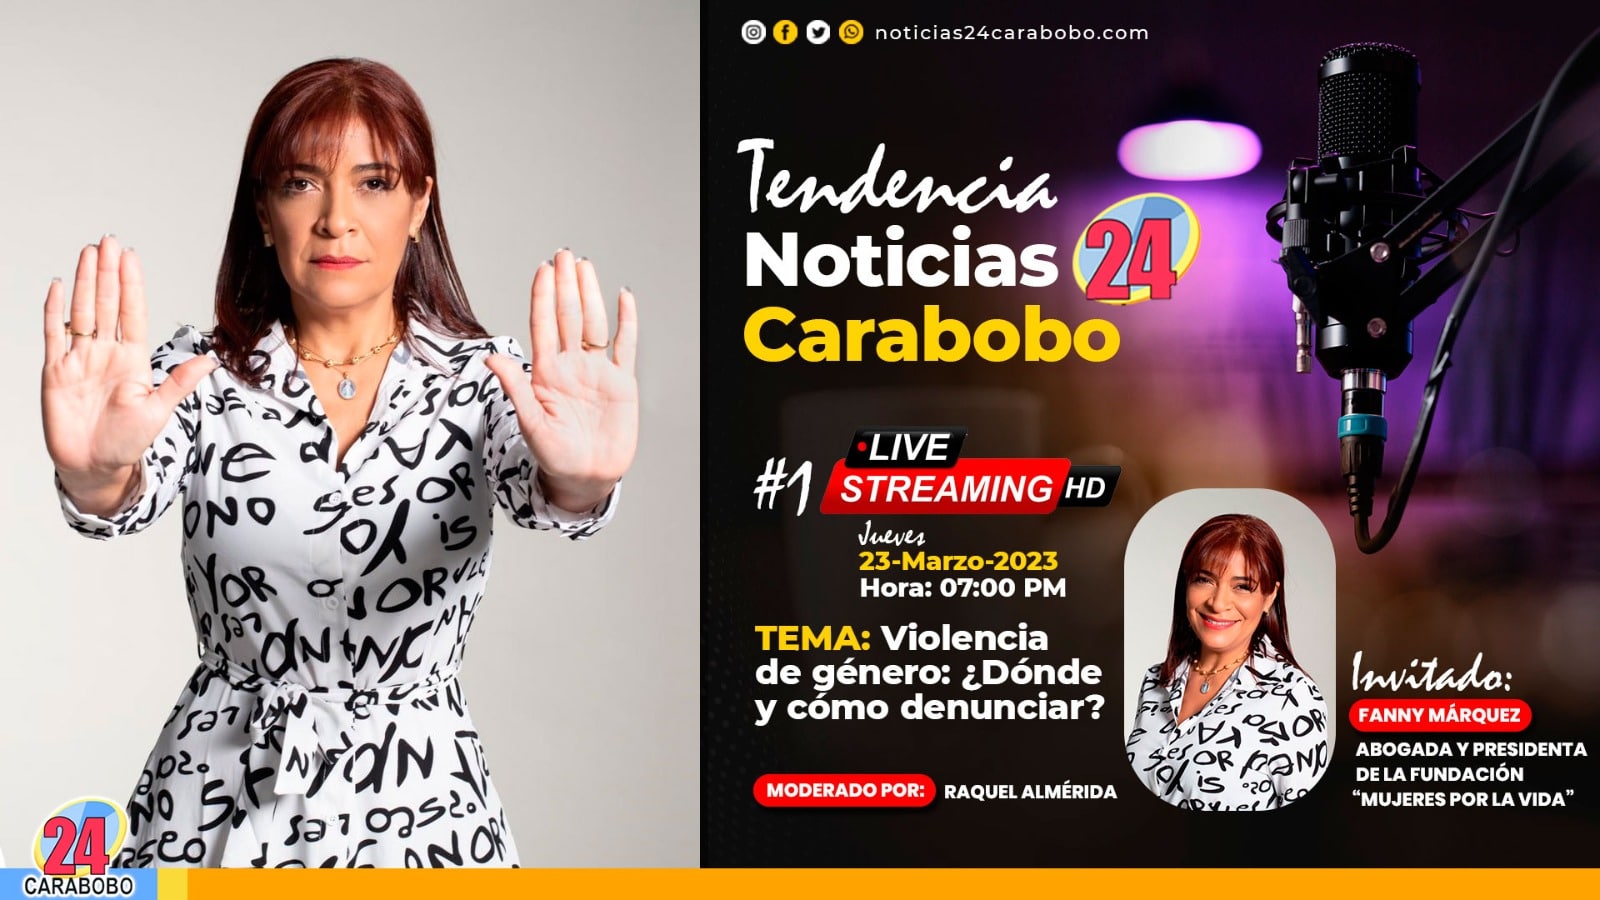 Tendencia News24 Carabobo